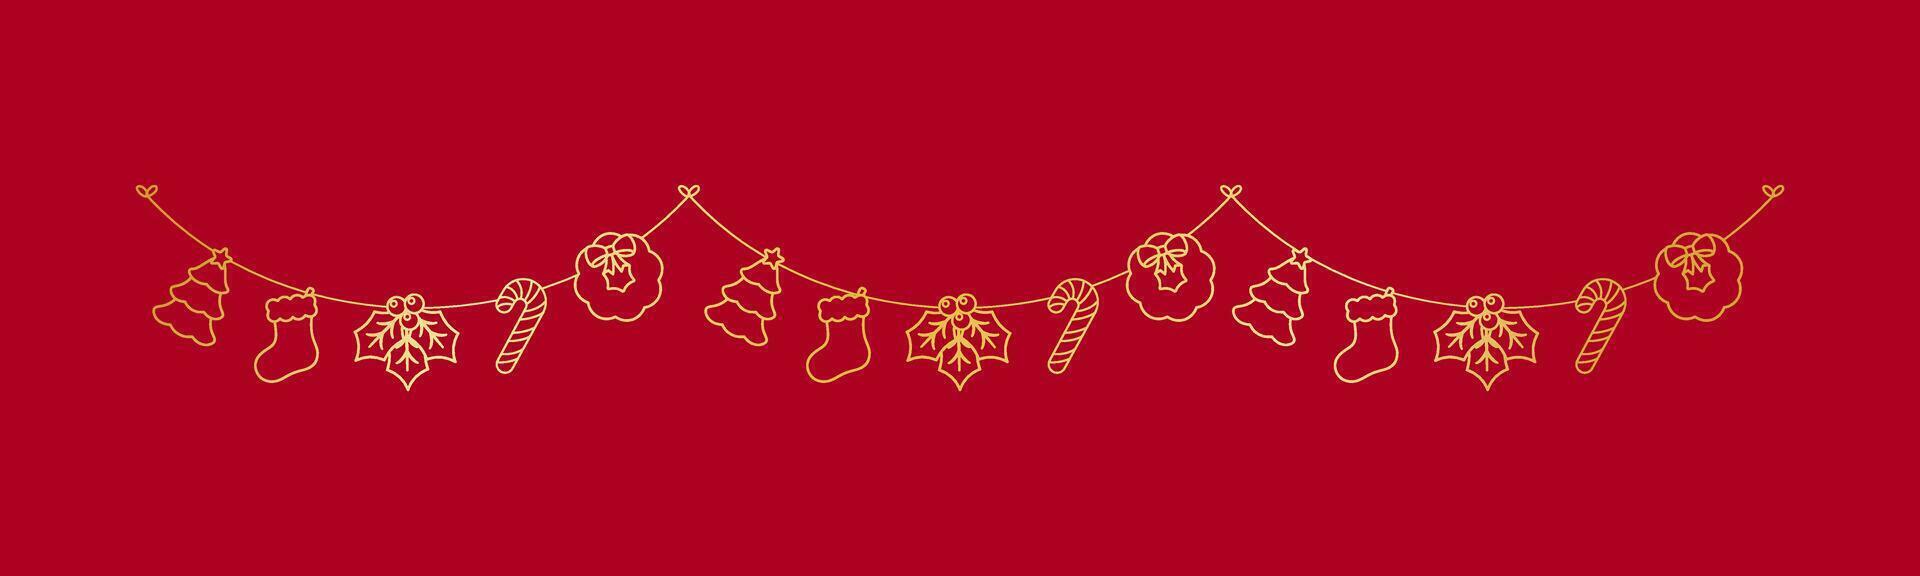 or Noël guirlande contour griffonnage vecteur illustration, Noël graphique pour enfants, de fête hiver vacances saison bruant